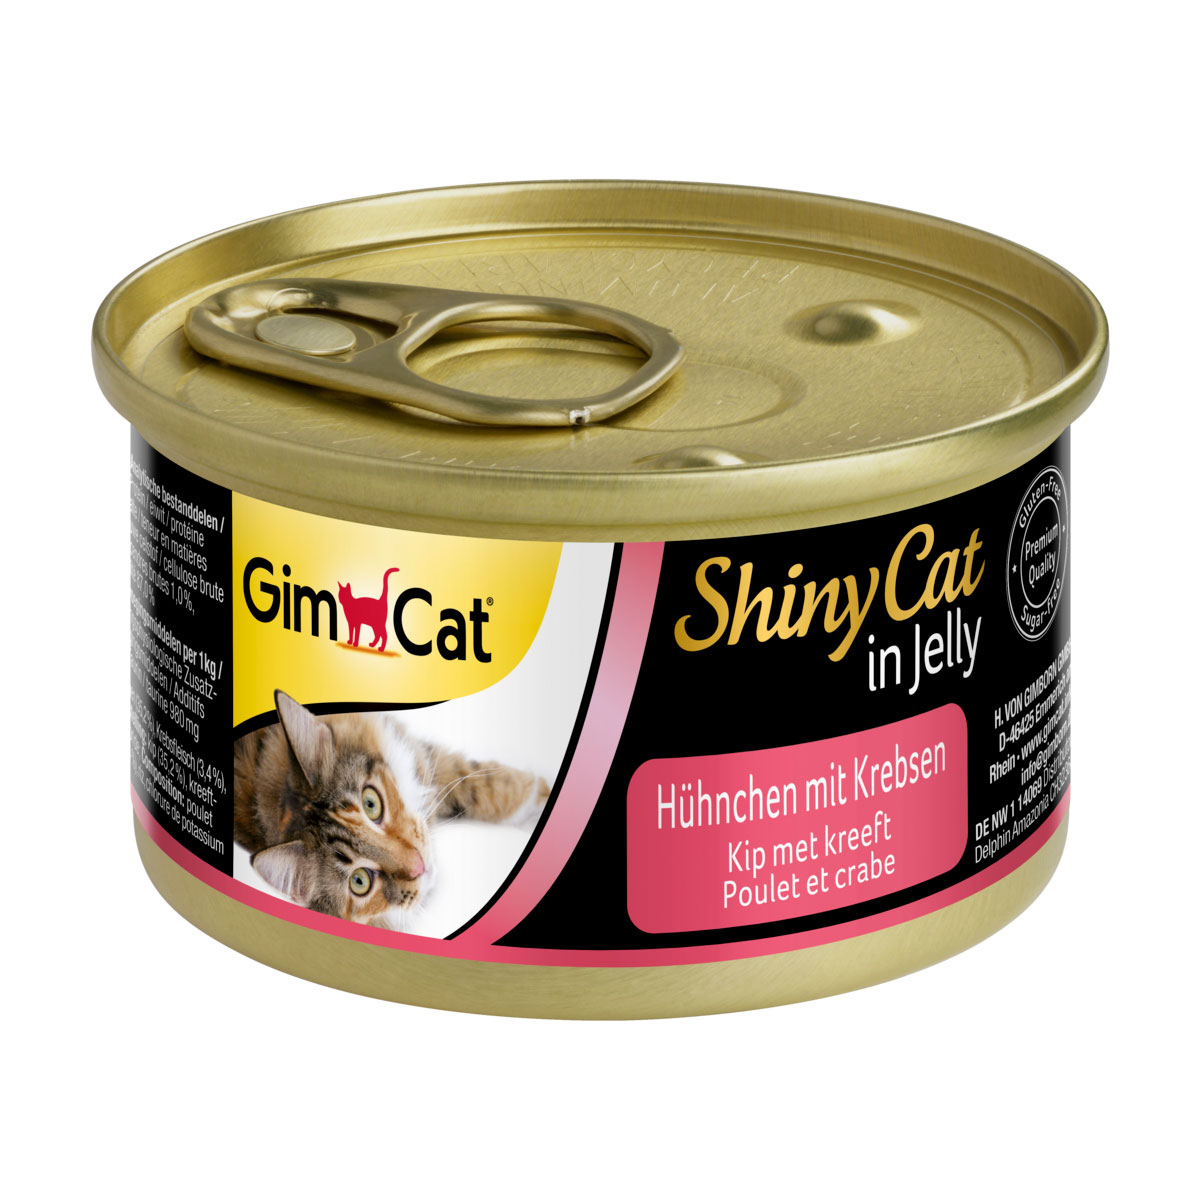 GimCat ShinyCat v želé, 24 x 70 g Kuře s kraby